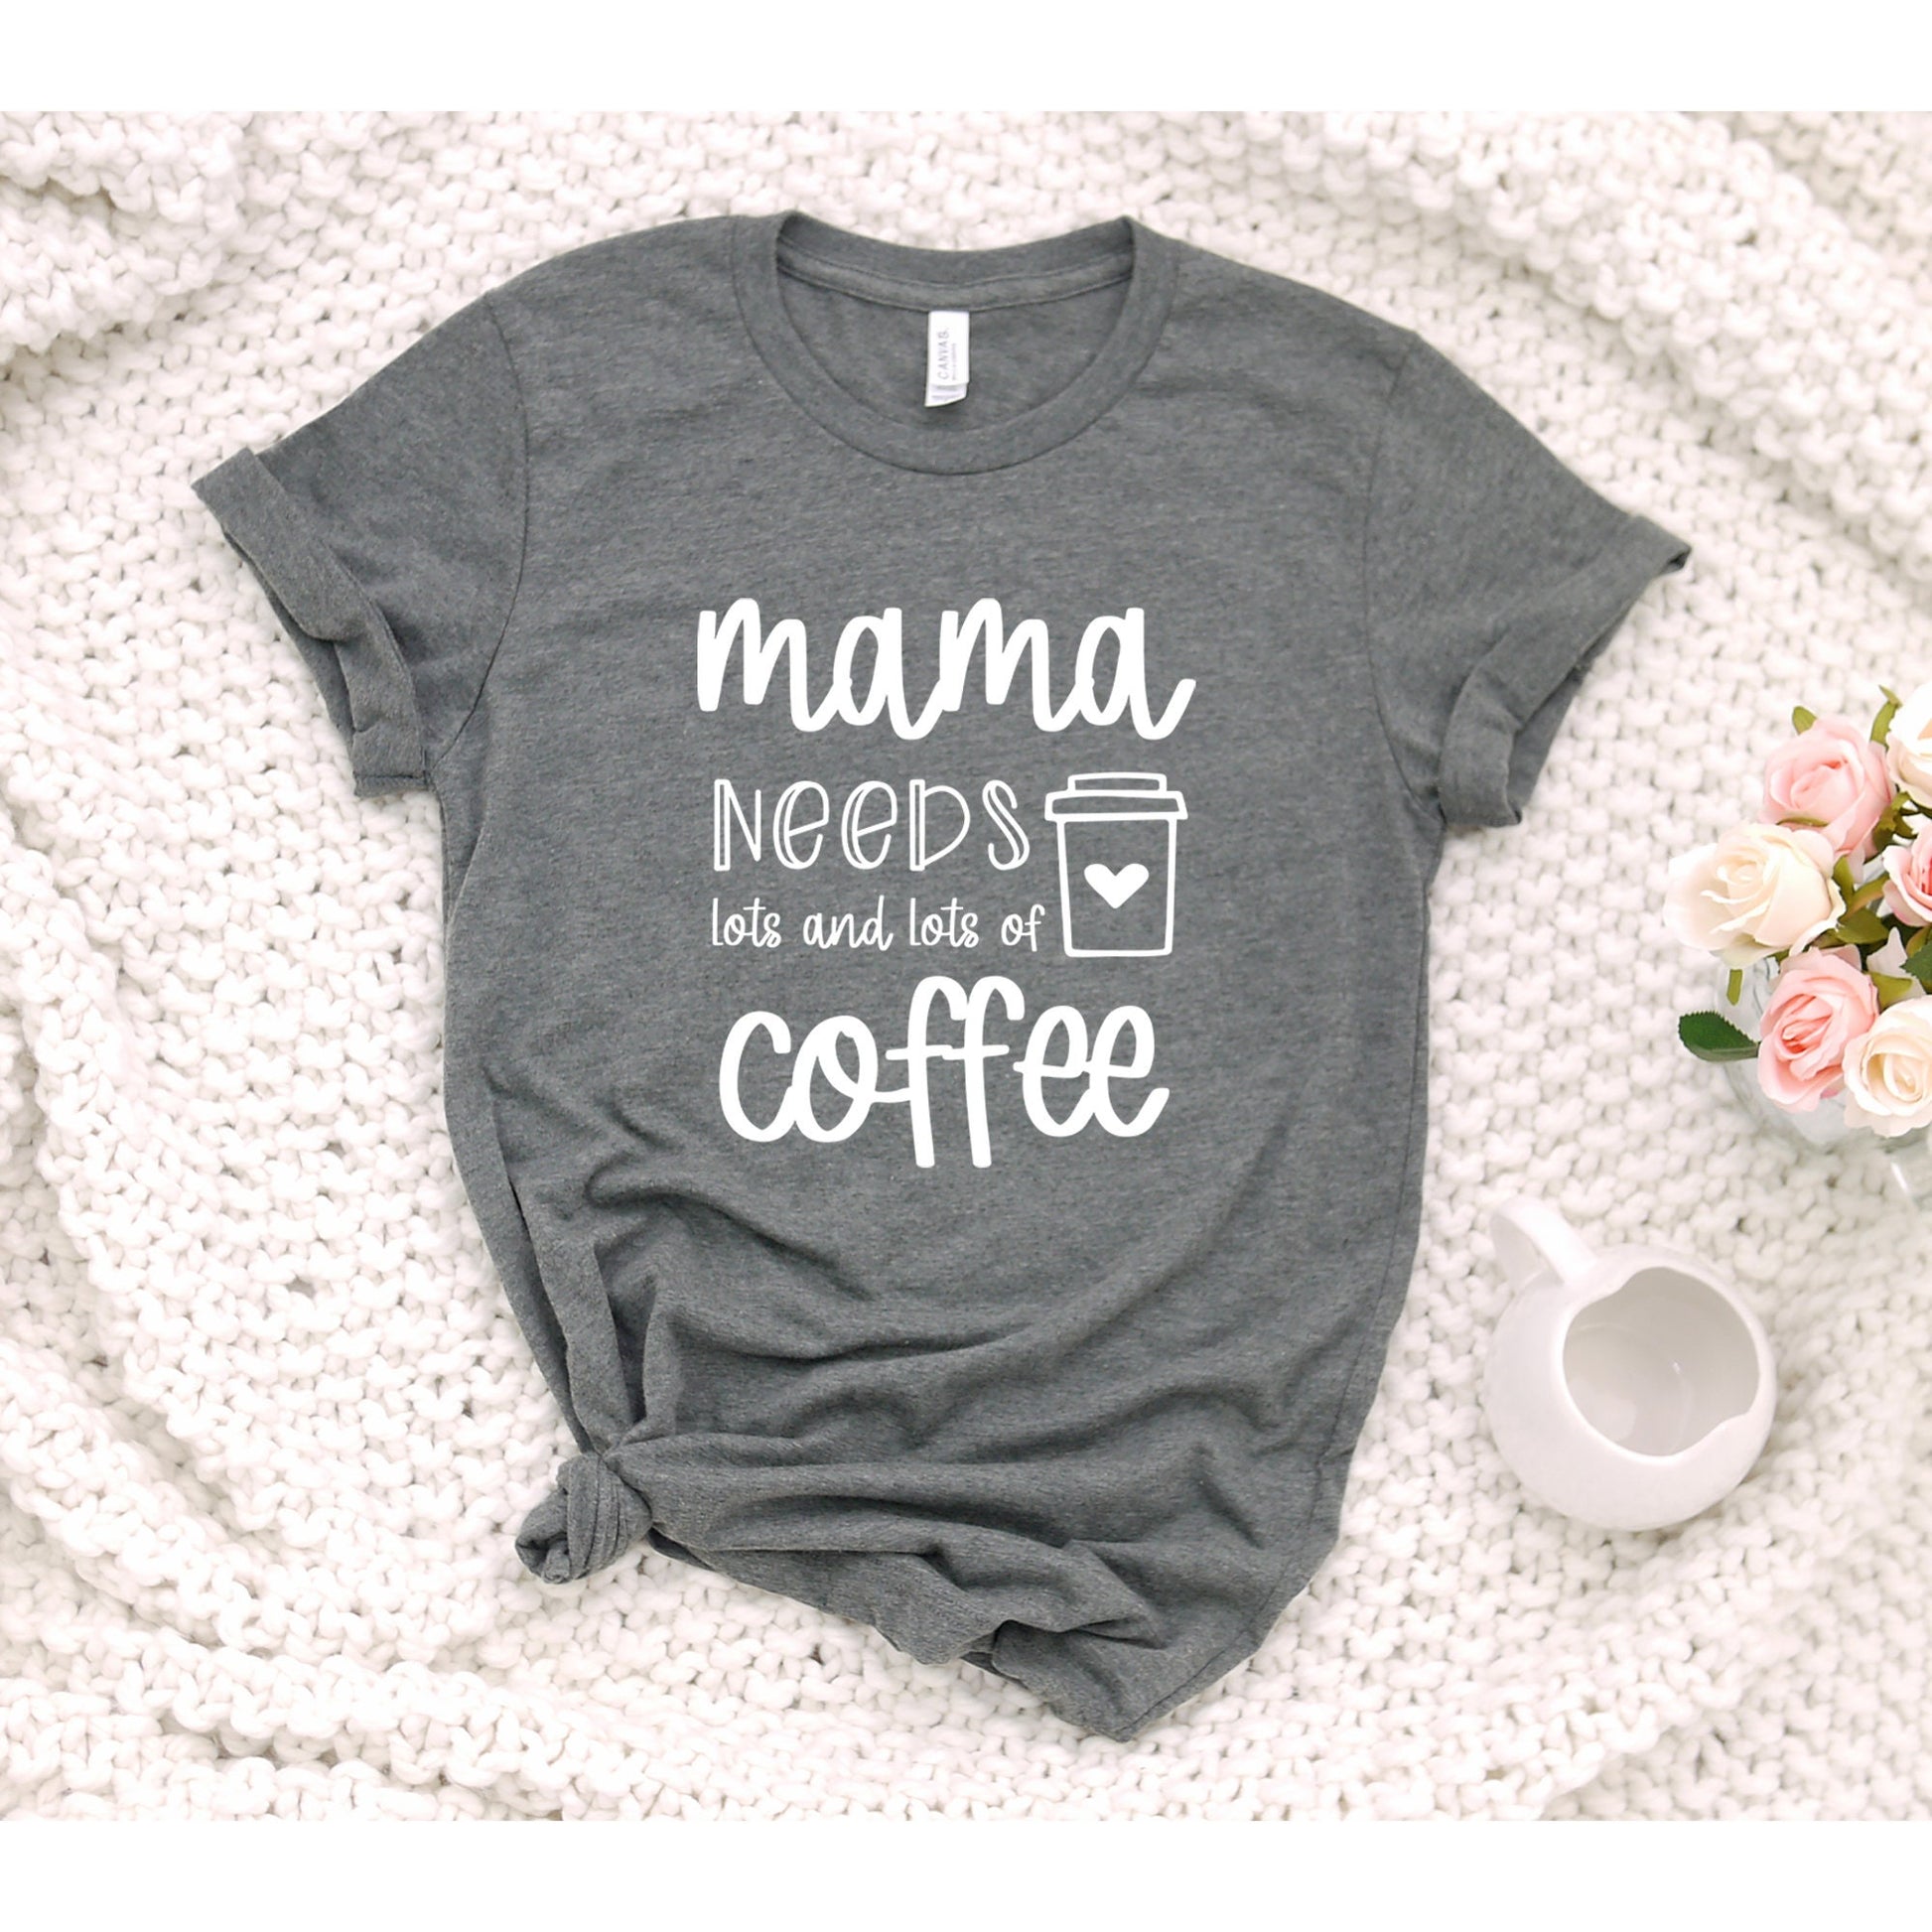 Mama Needs Coffee, Mom Shirts, Mom-life Shirt, Shirts for Moms, Trendy Mom T-Shirts, Cool Mom Shirts, Shirts for Moms